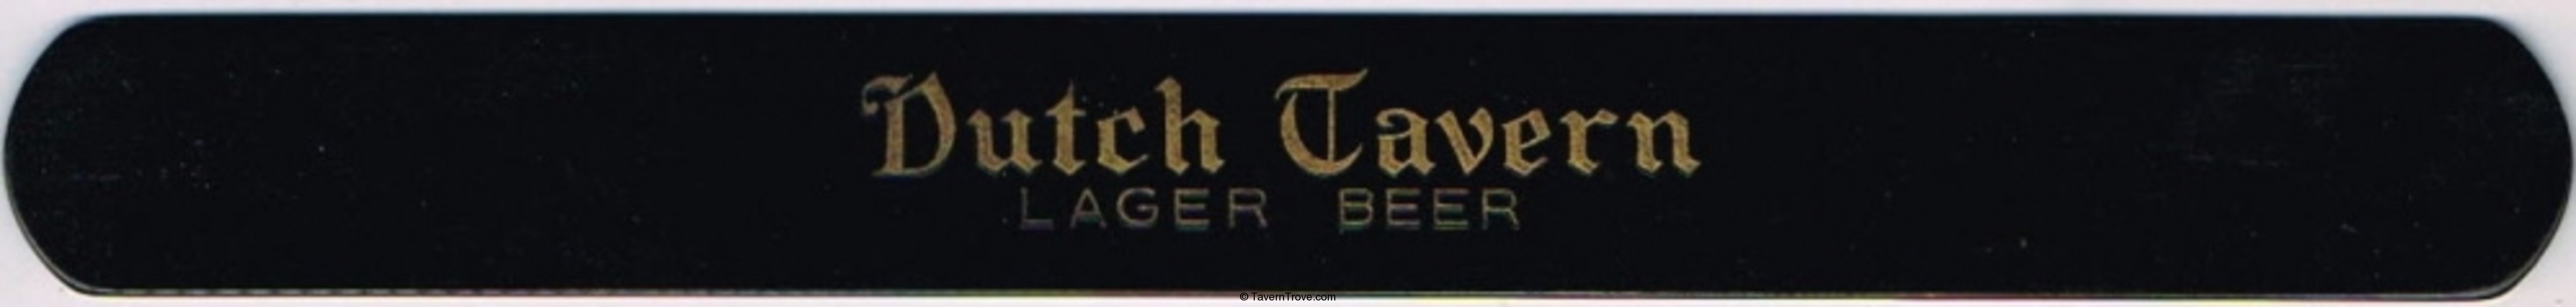 Dutch Tavern Beer